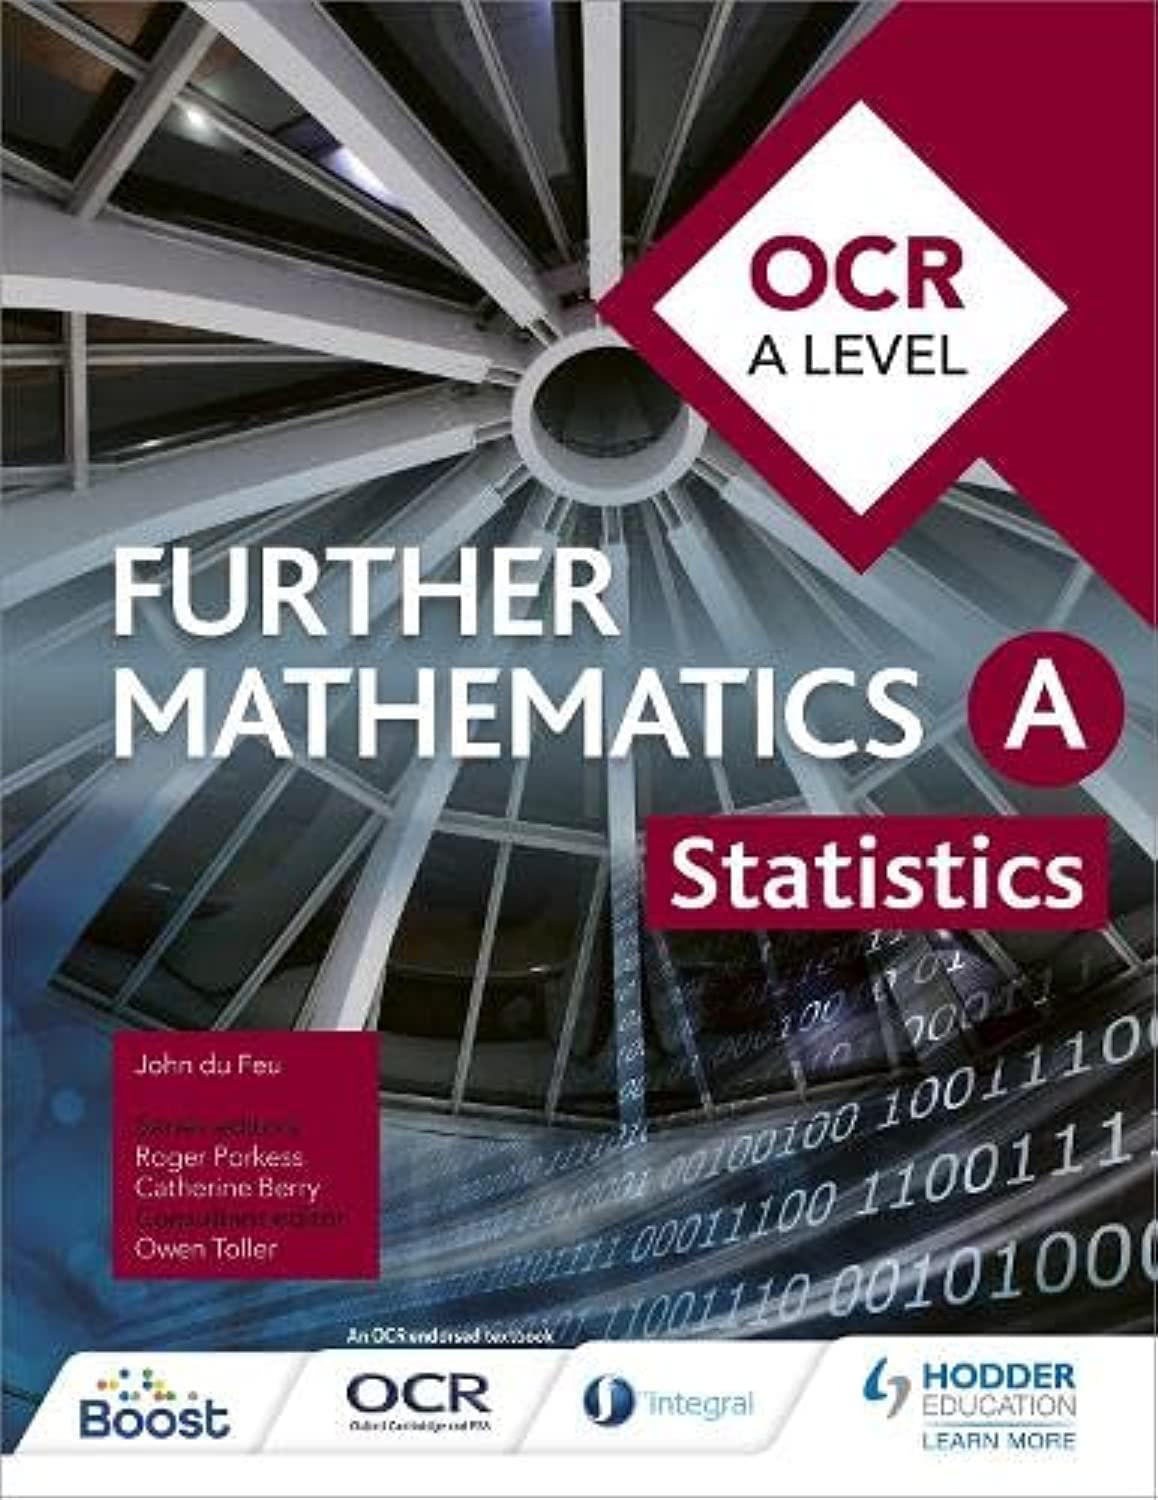 ocr a level further mathematics statistics 1st edition john du feu, owen toller 1471853063, 978-1471853067